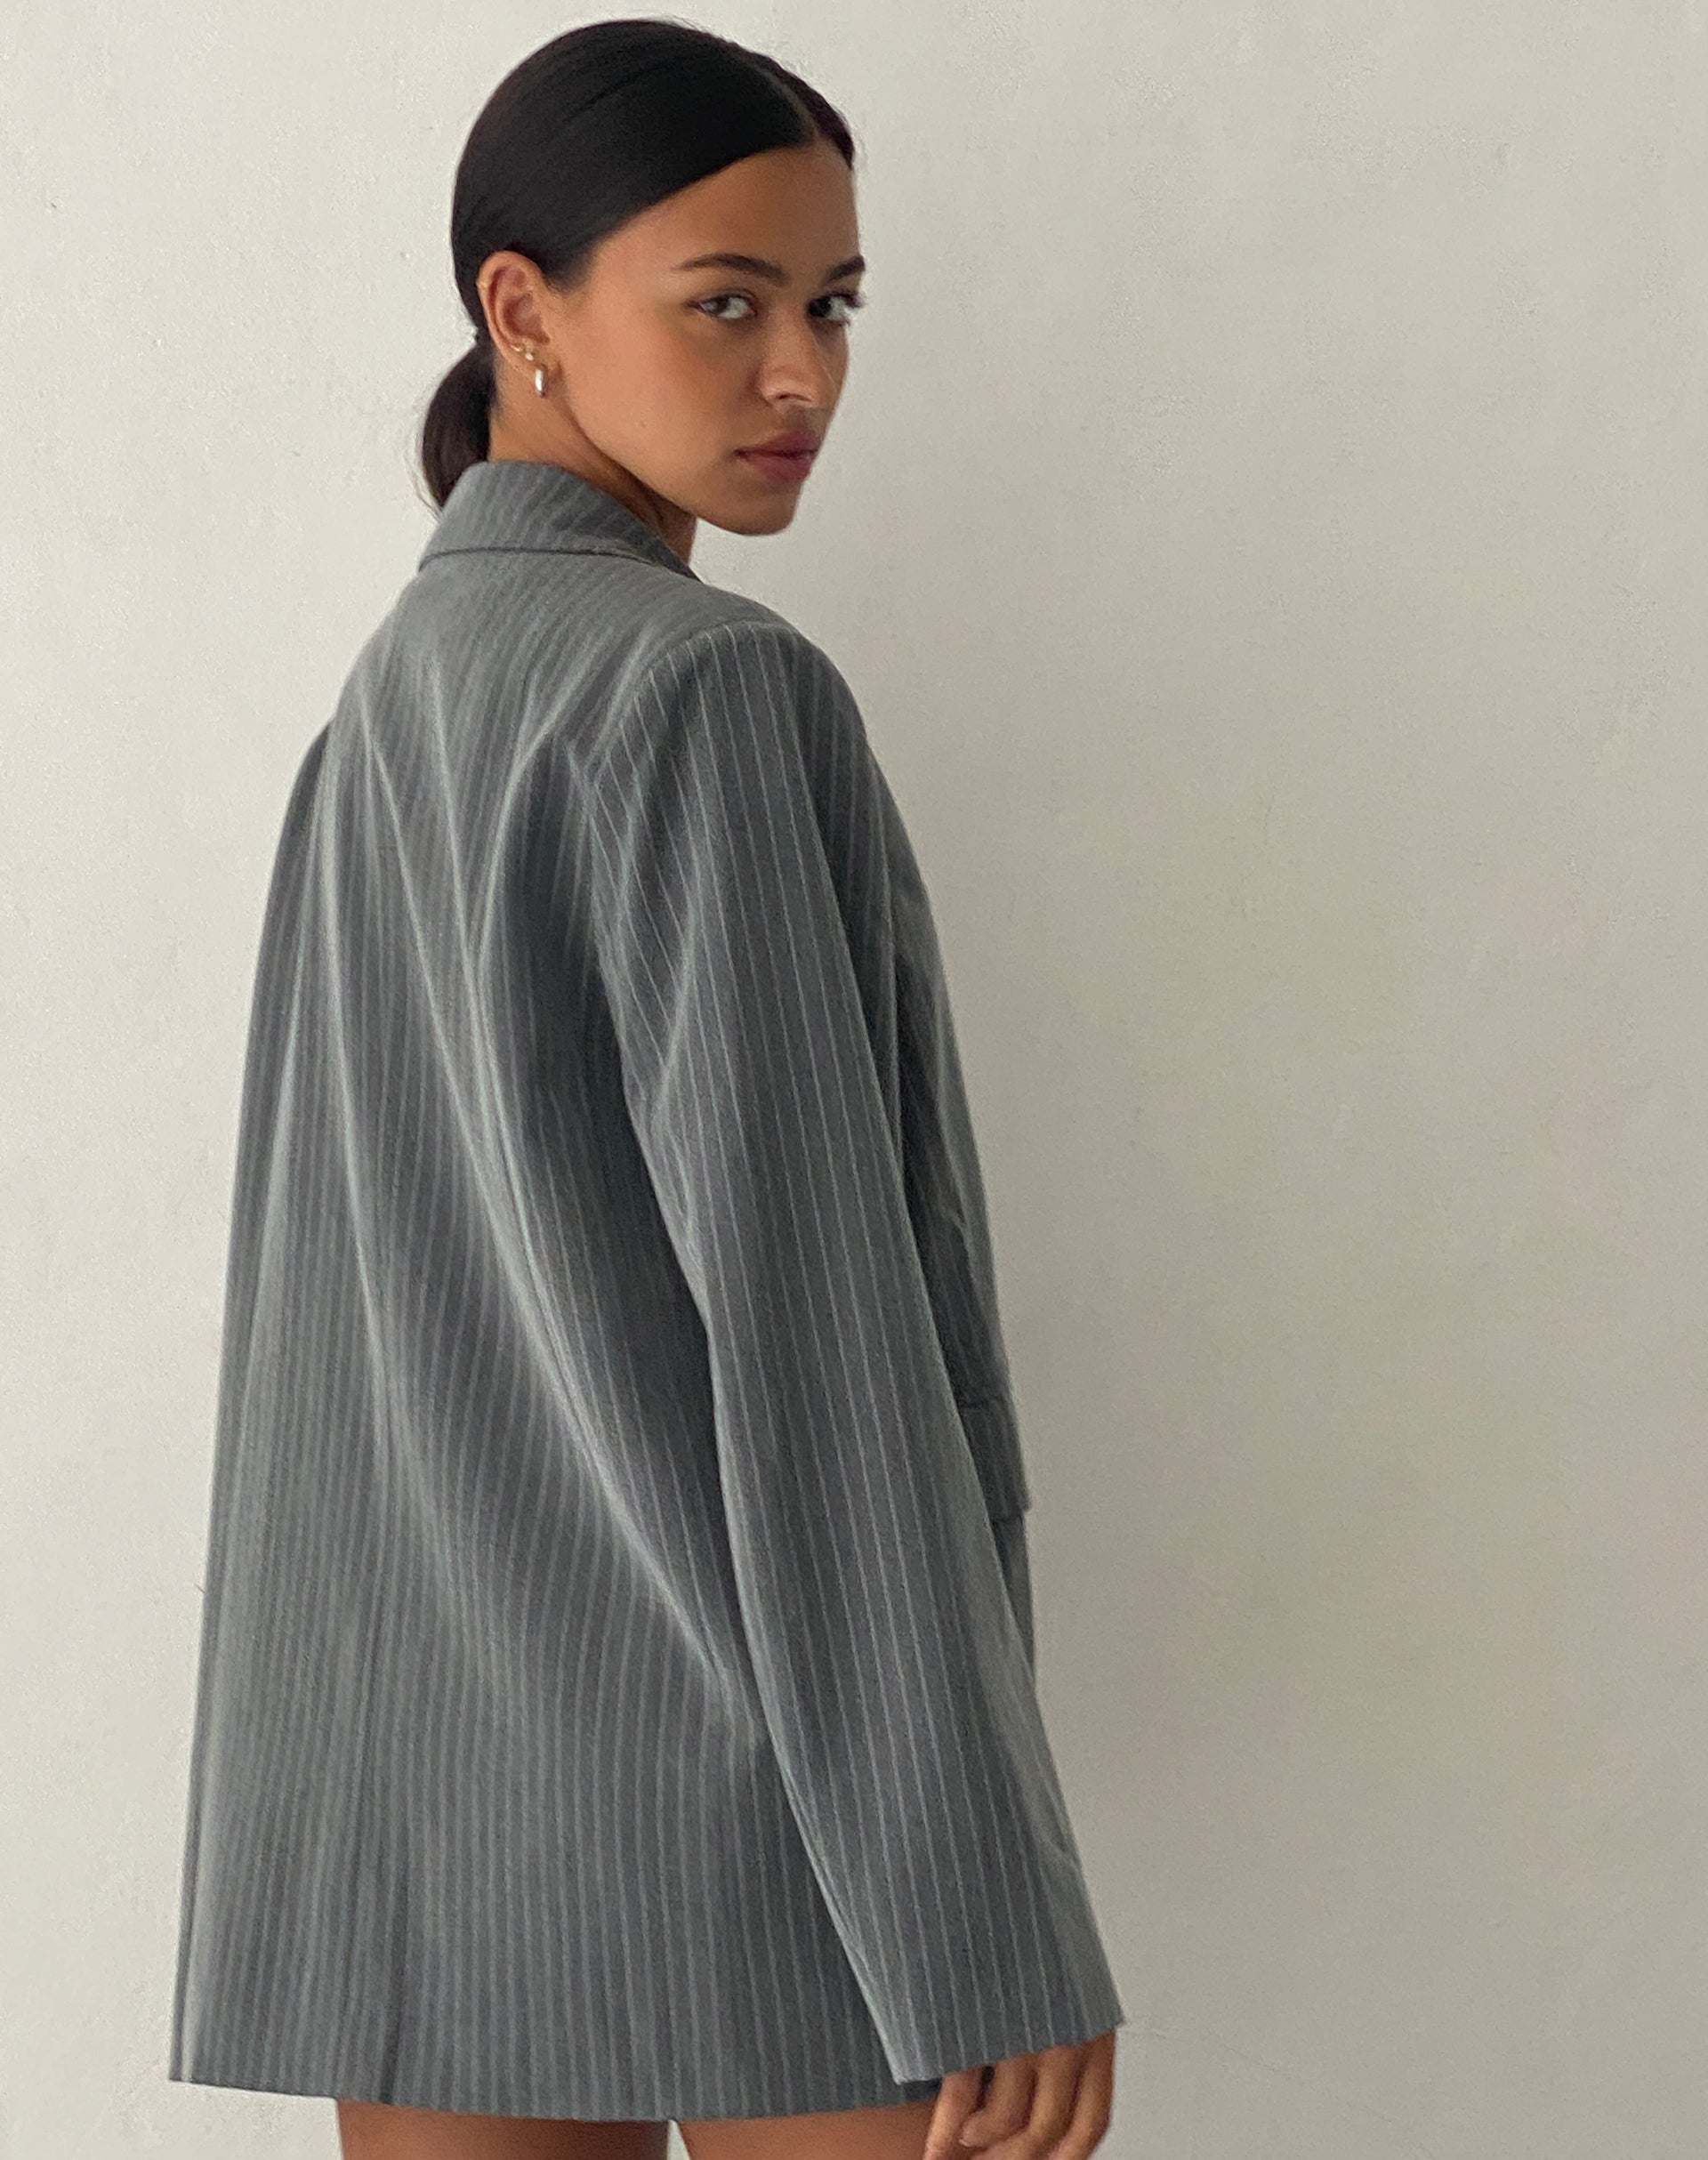 image of Maiwa Blazer in Tailoring Grey Pinstripe